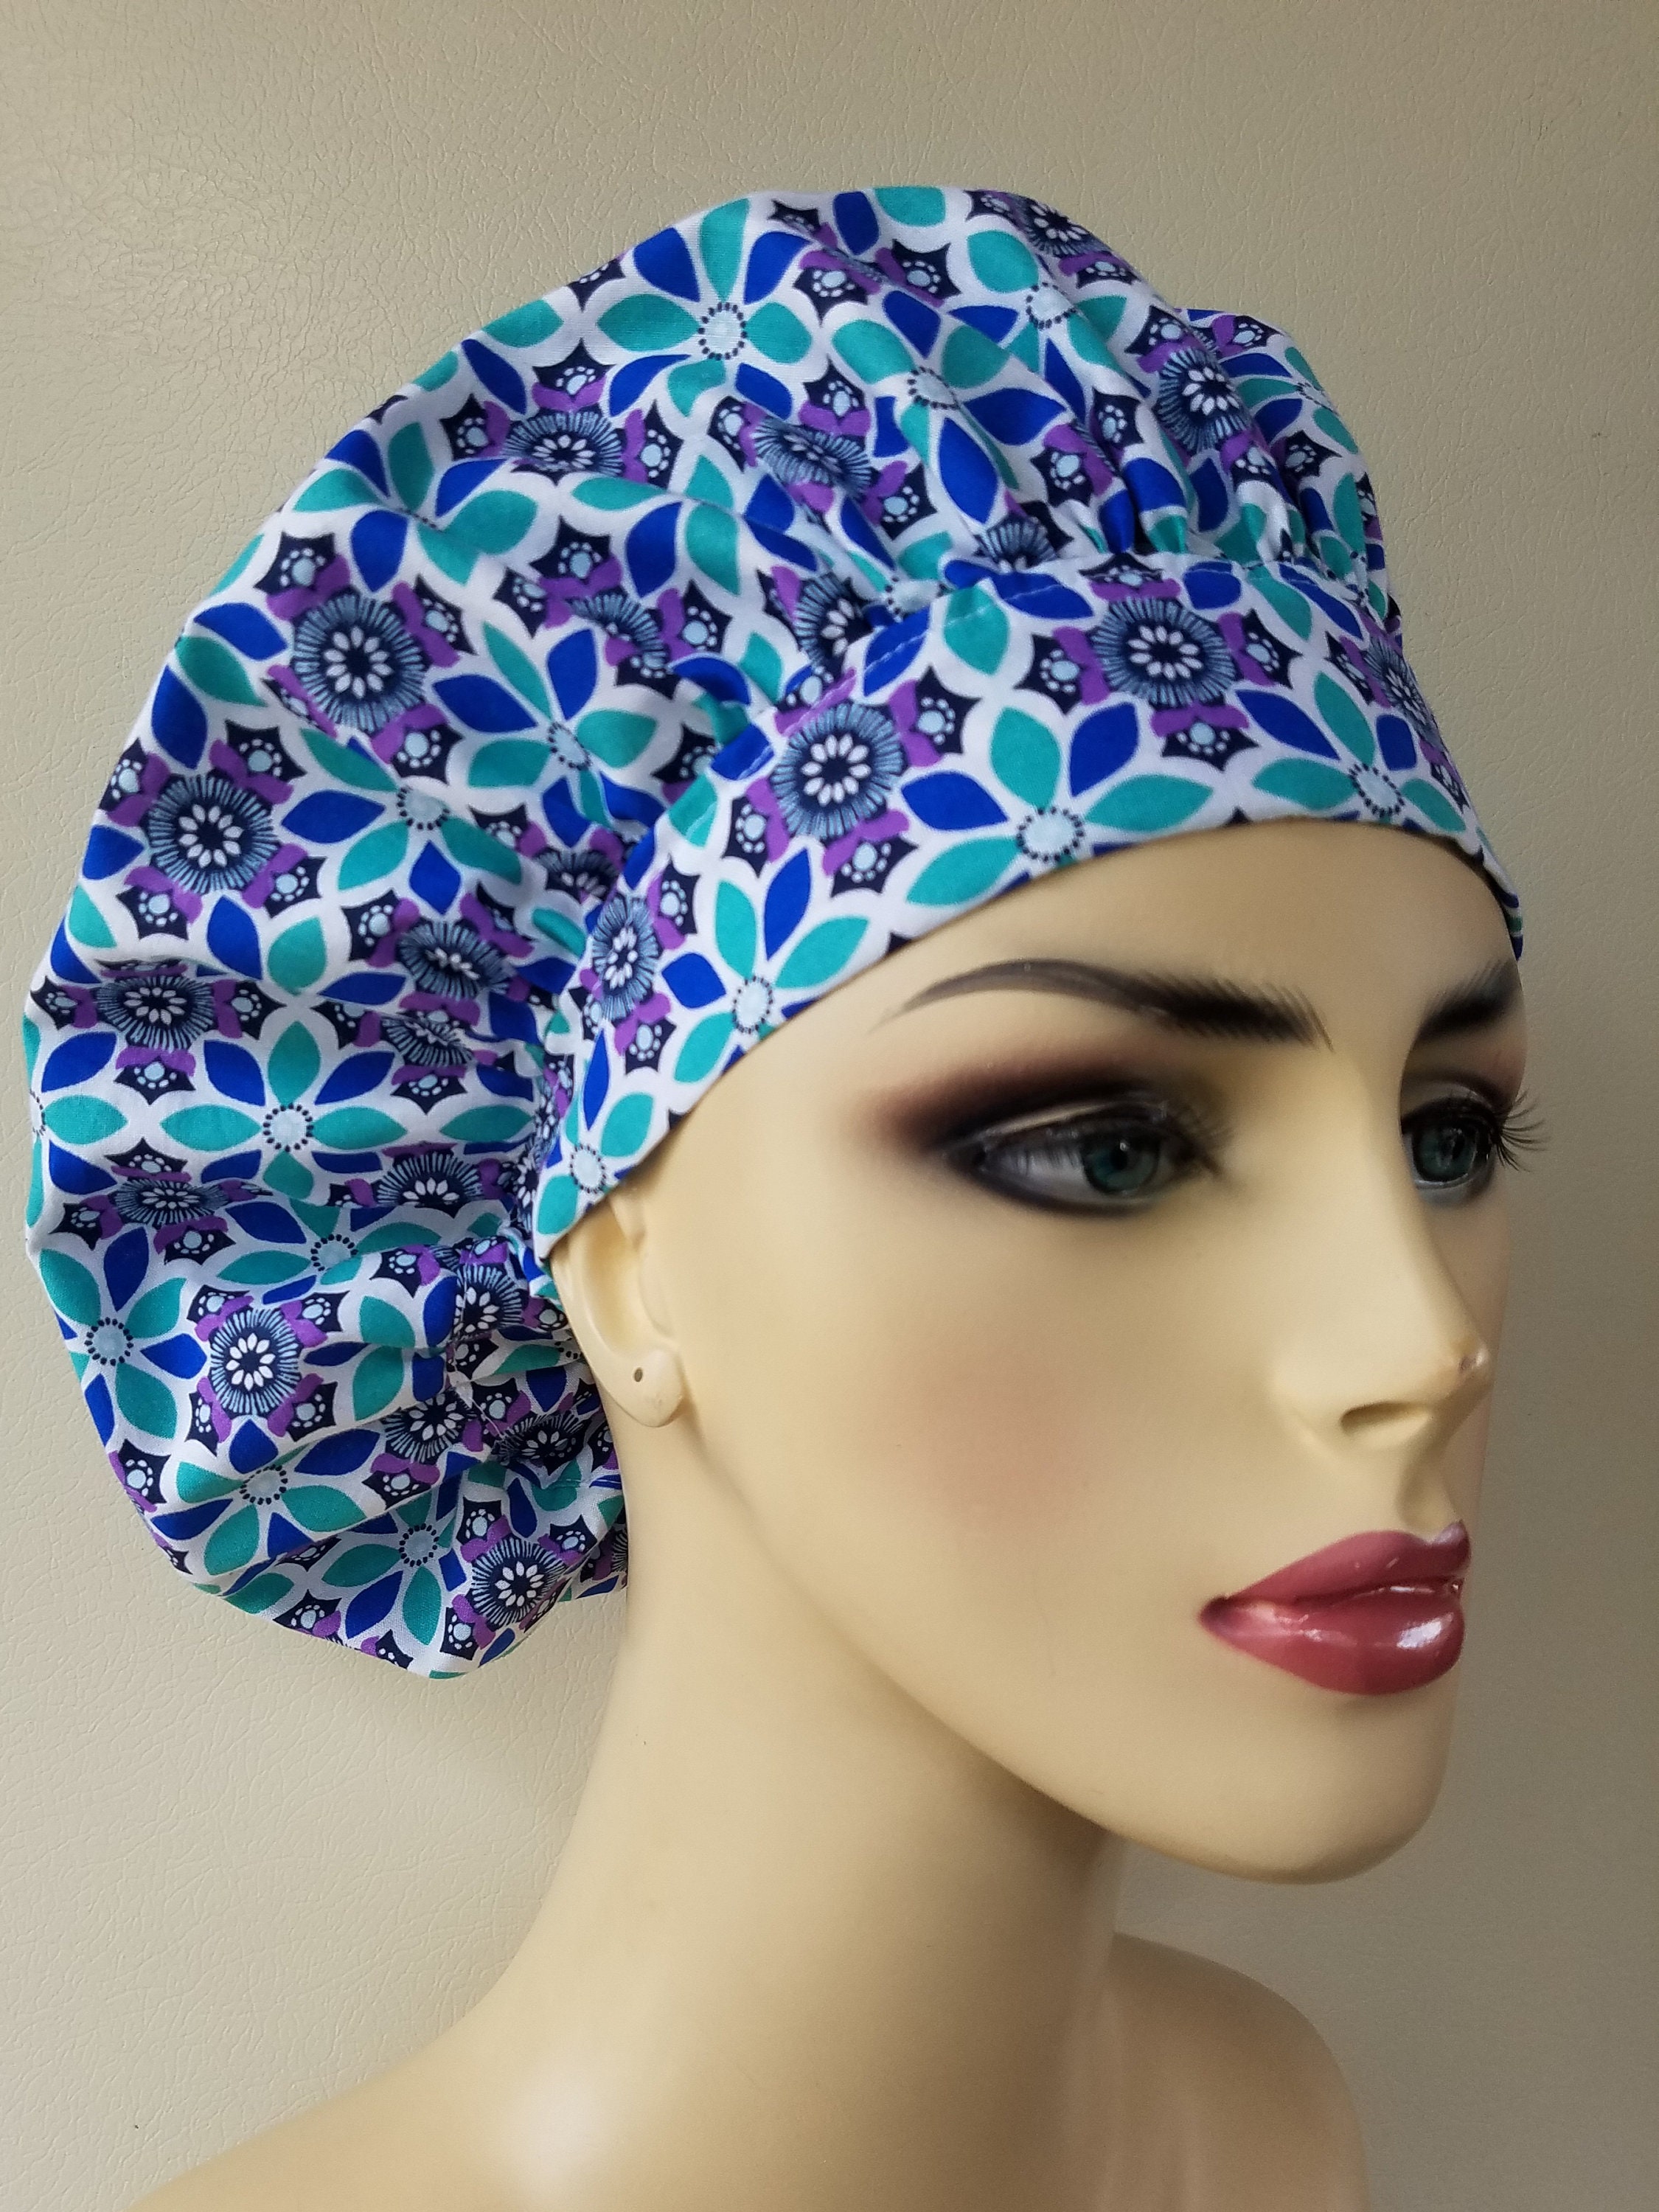 Scrub cap, blue and purple design scrub cap, scrub cap for women ...